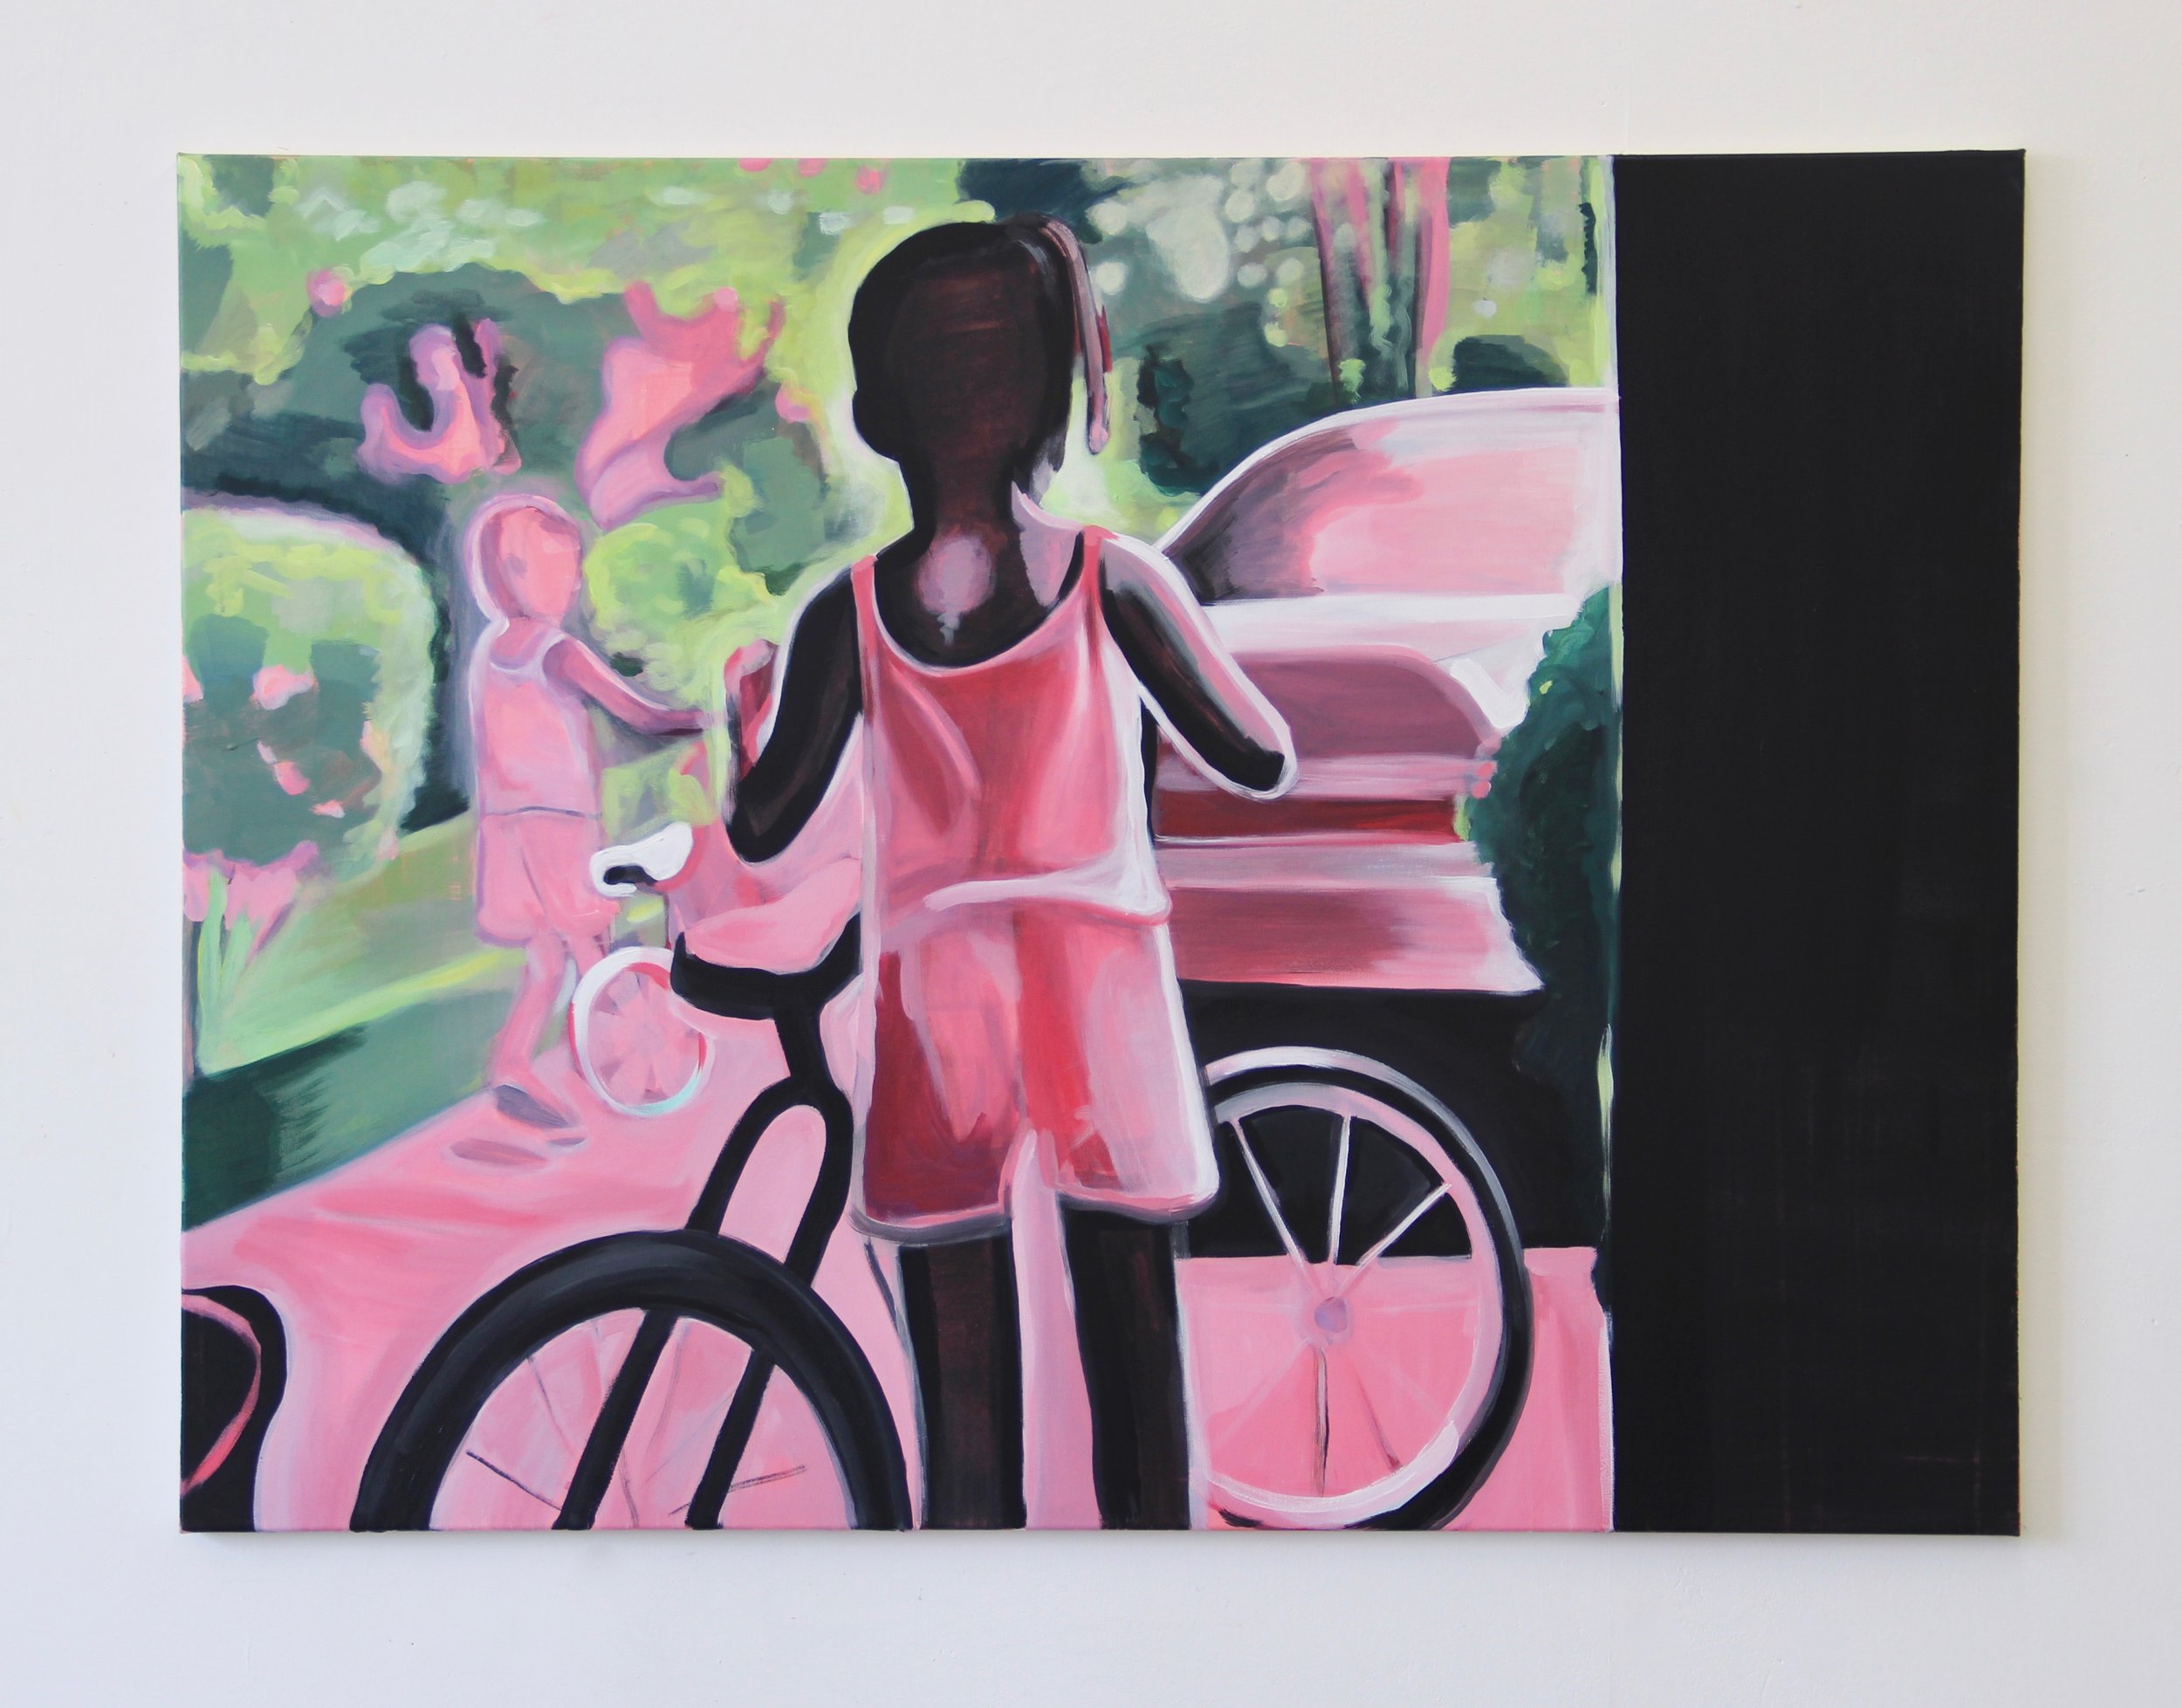   Biking , 2018 Acrylic on canvas 36 x 48 inches 91 x 122 cm  